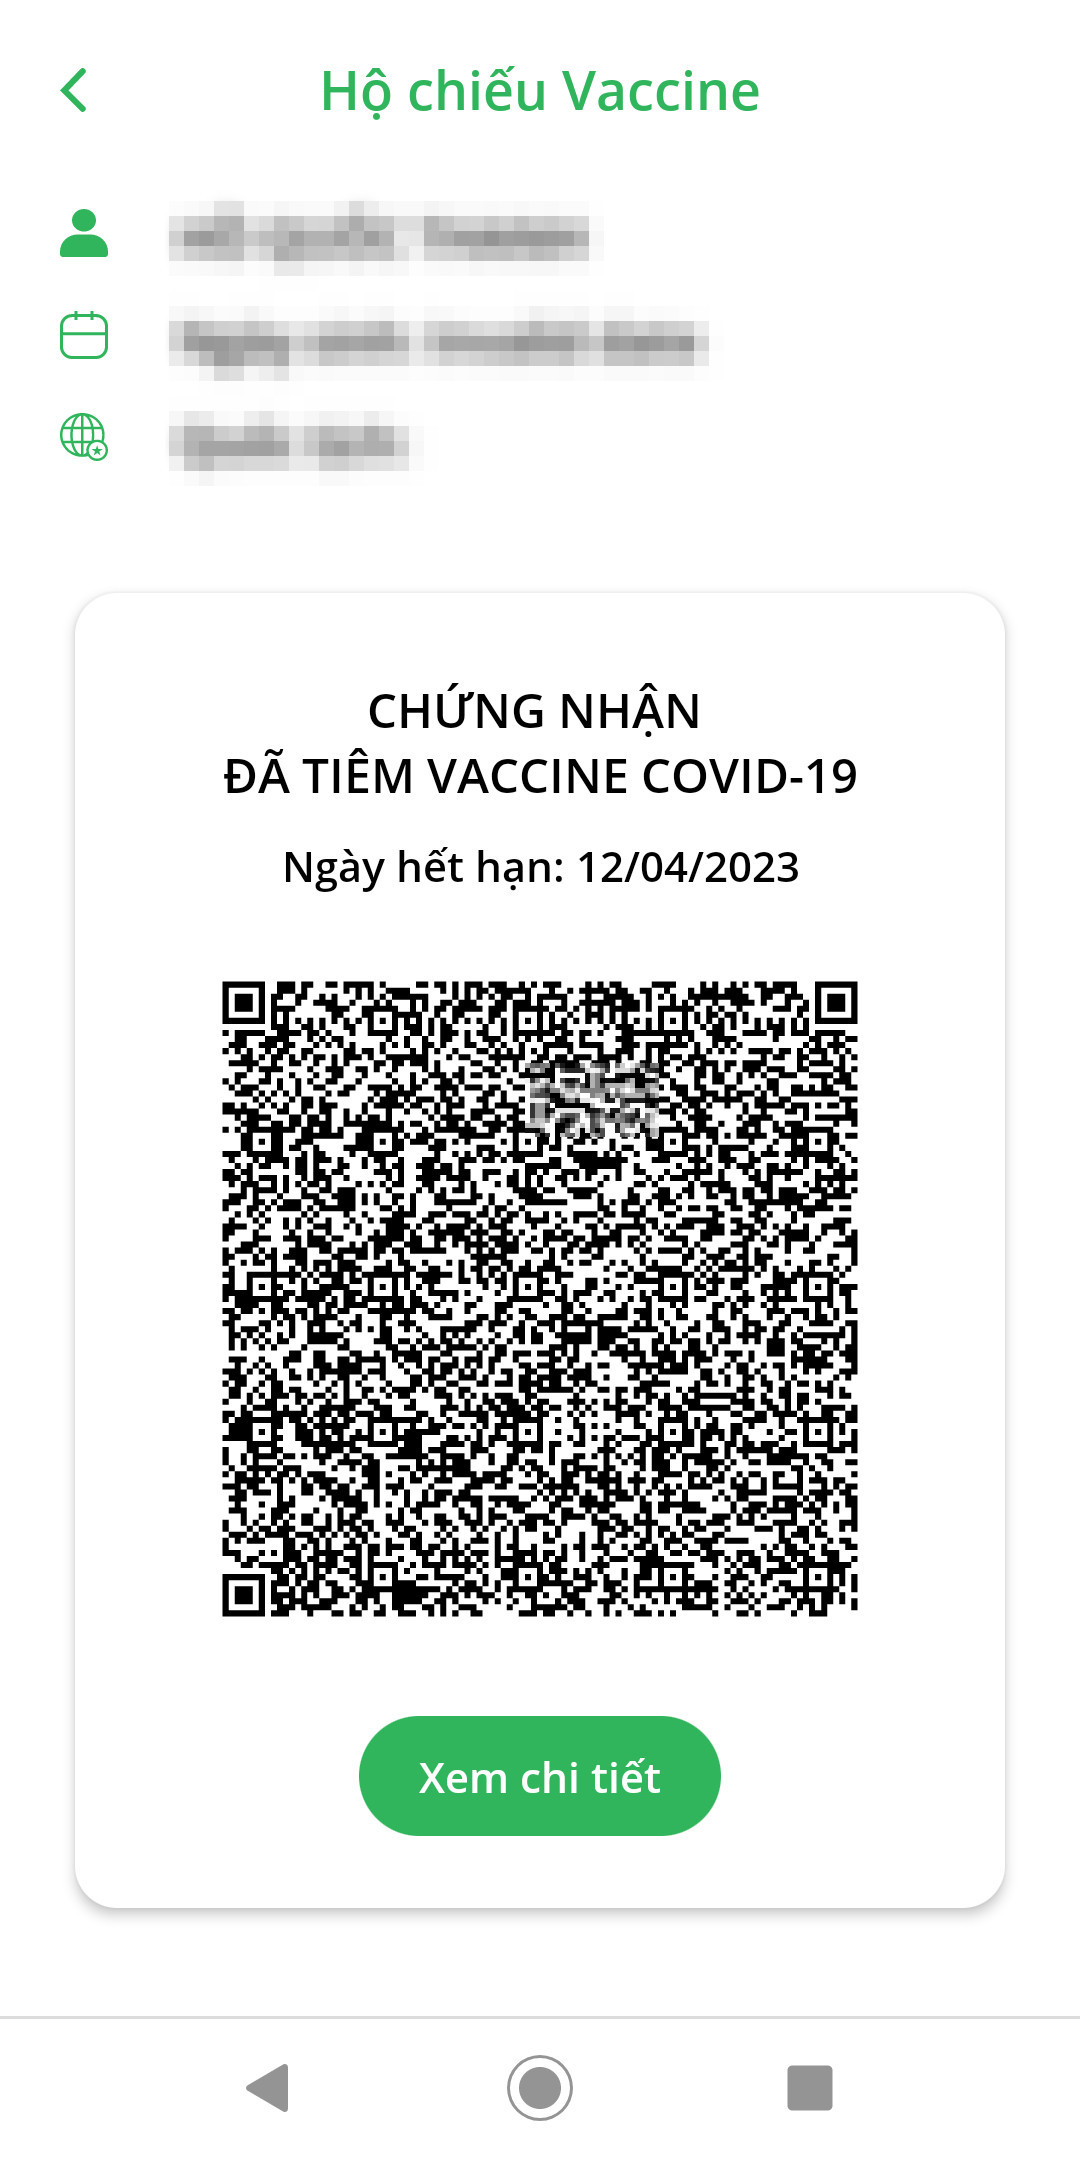 Mẫu chứng nhận Hộ chiếu vắc xin COVID-19